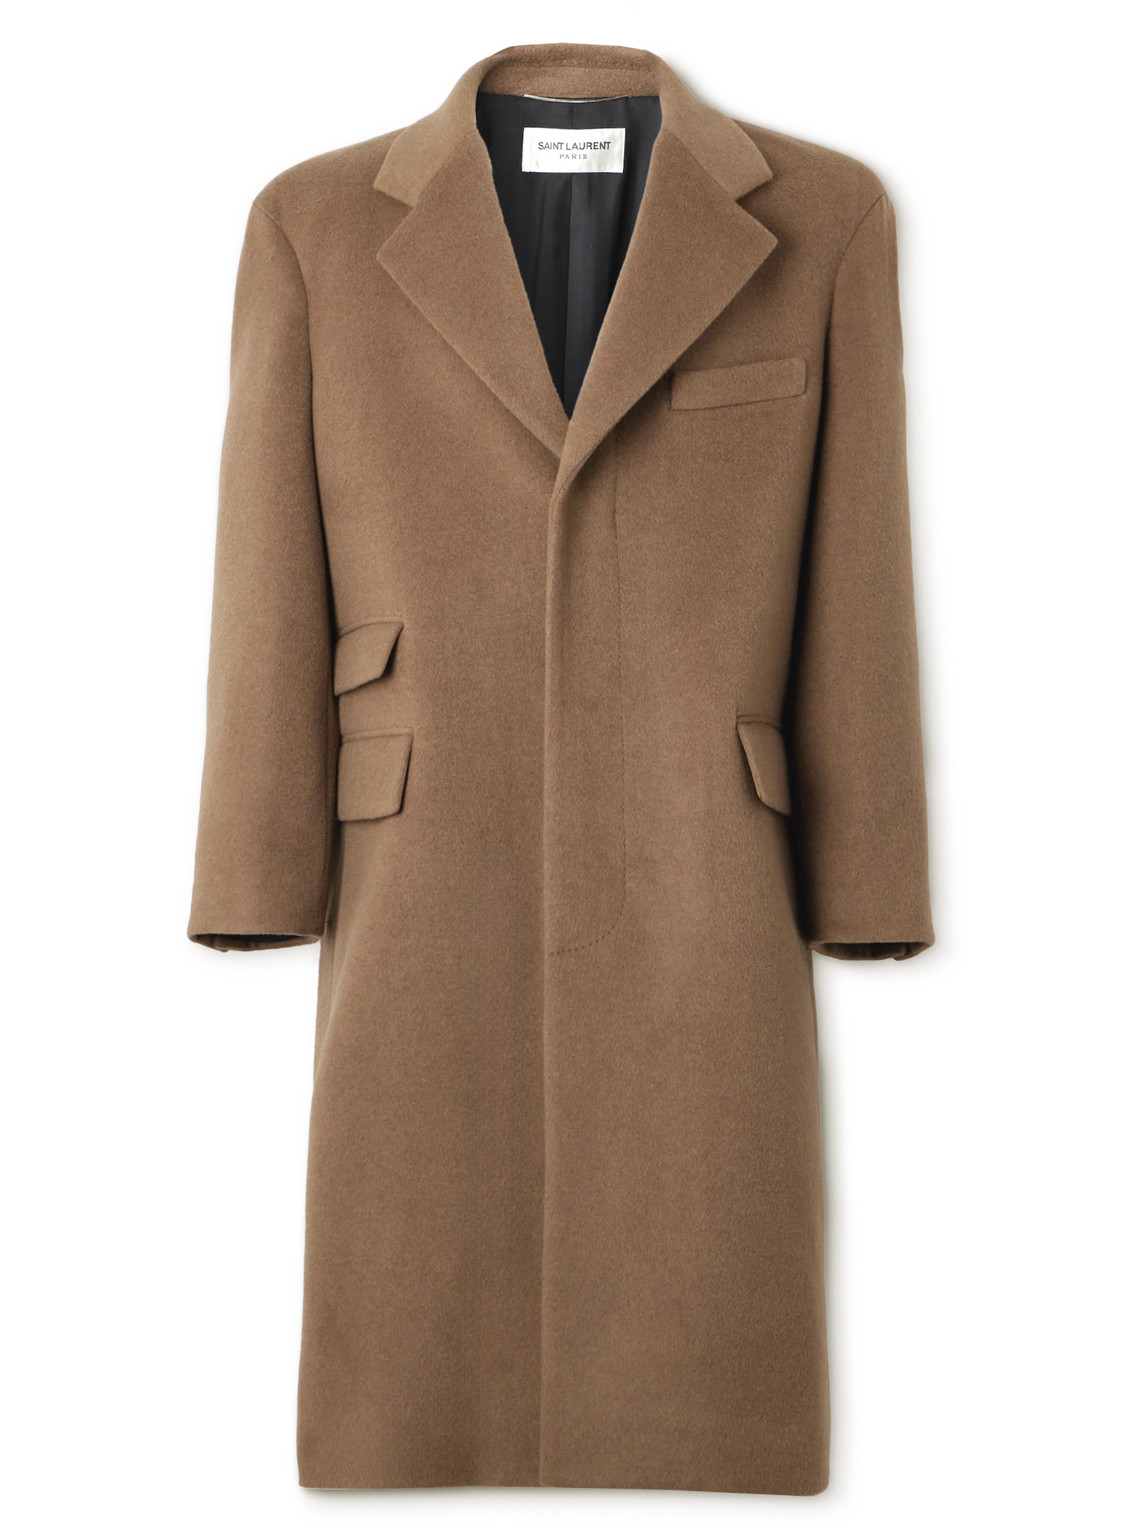 SAINT LAURENT - Oversized Brushed-Wool Coat - Men - Brown - 48/50/52 von SAINT LAURENT